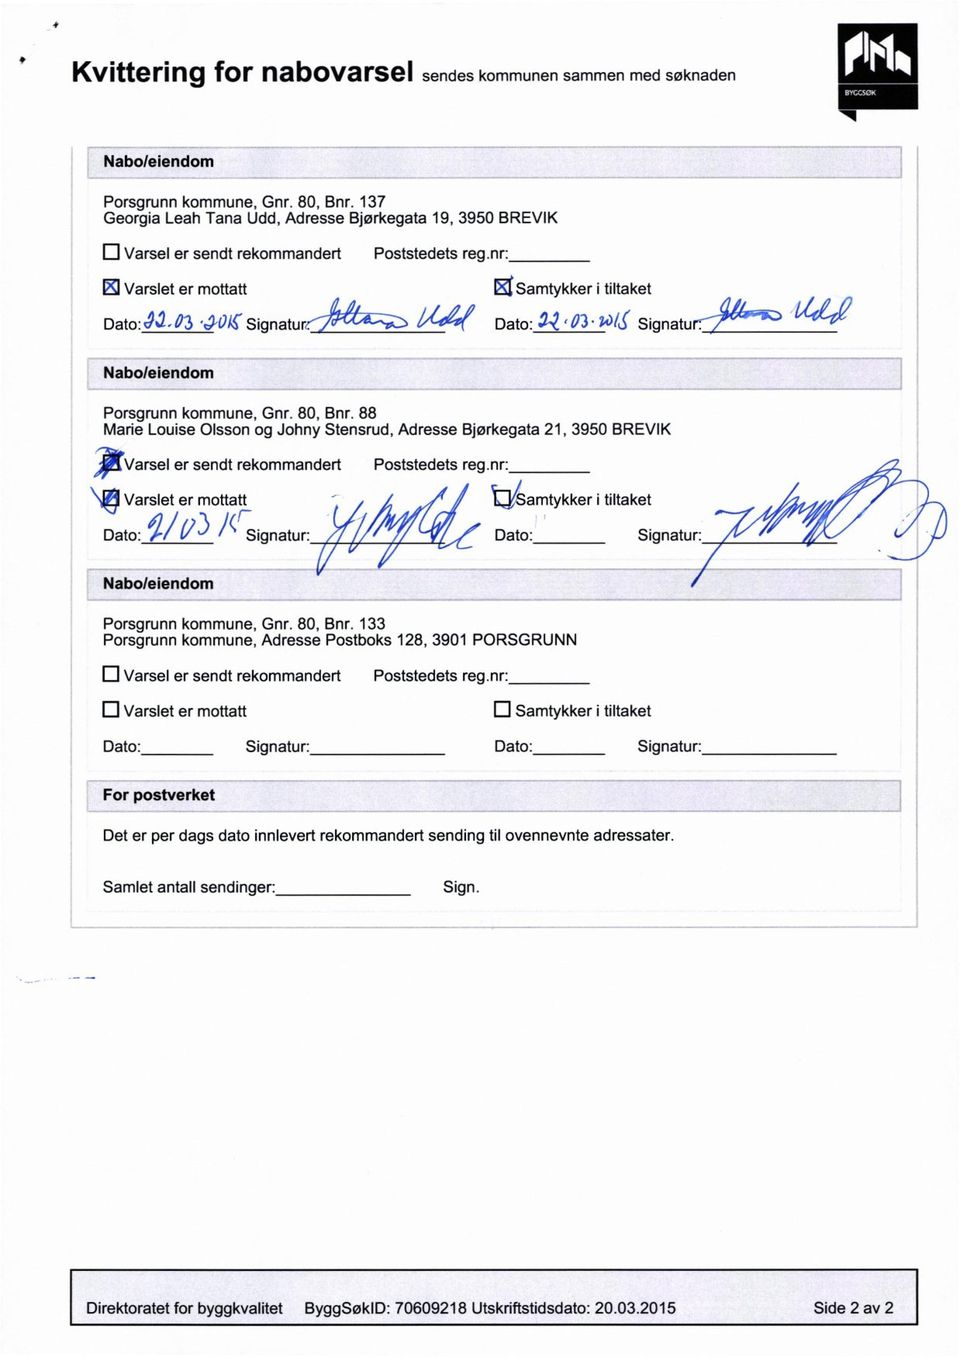 / Dato:-VZ 03'7 /J Signatur: å ` Naboleiendom Porsgrunn kommune, Gnr. 80, Bnr.